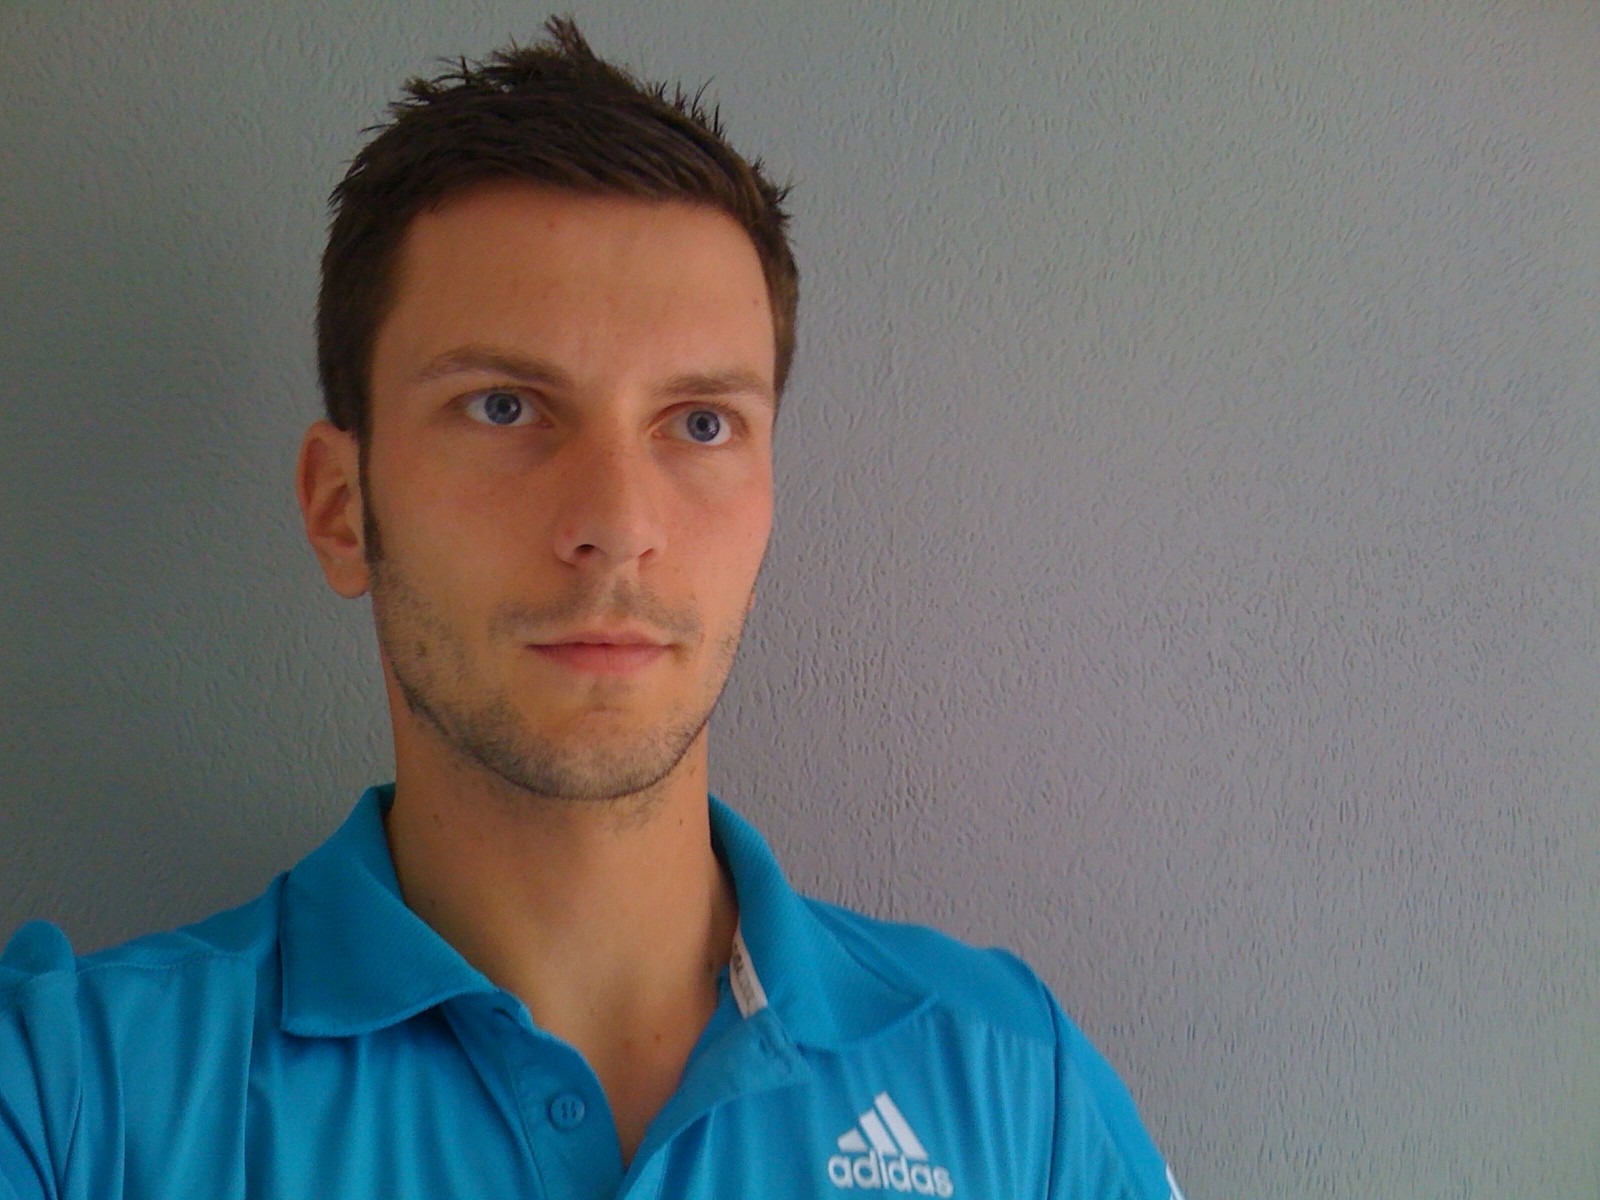 Trainer IMG_0248. Matthias Rambow